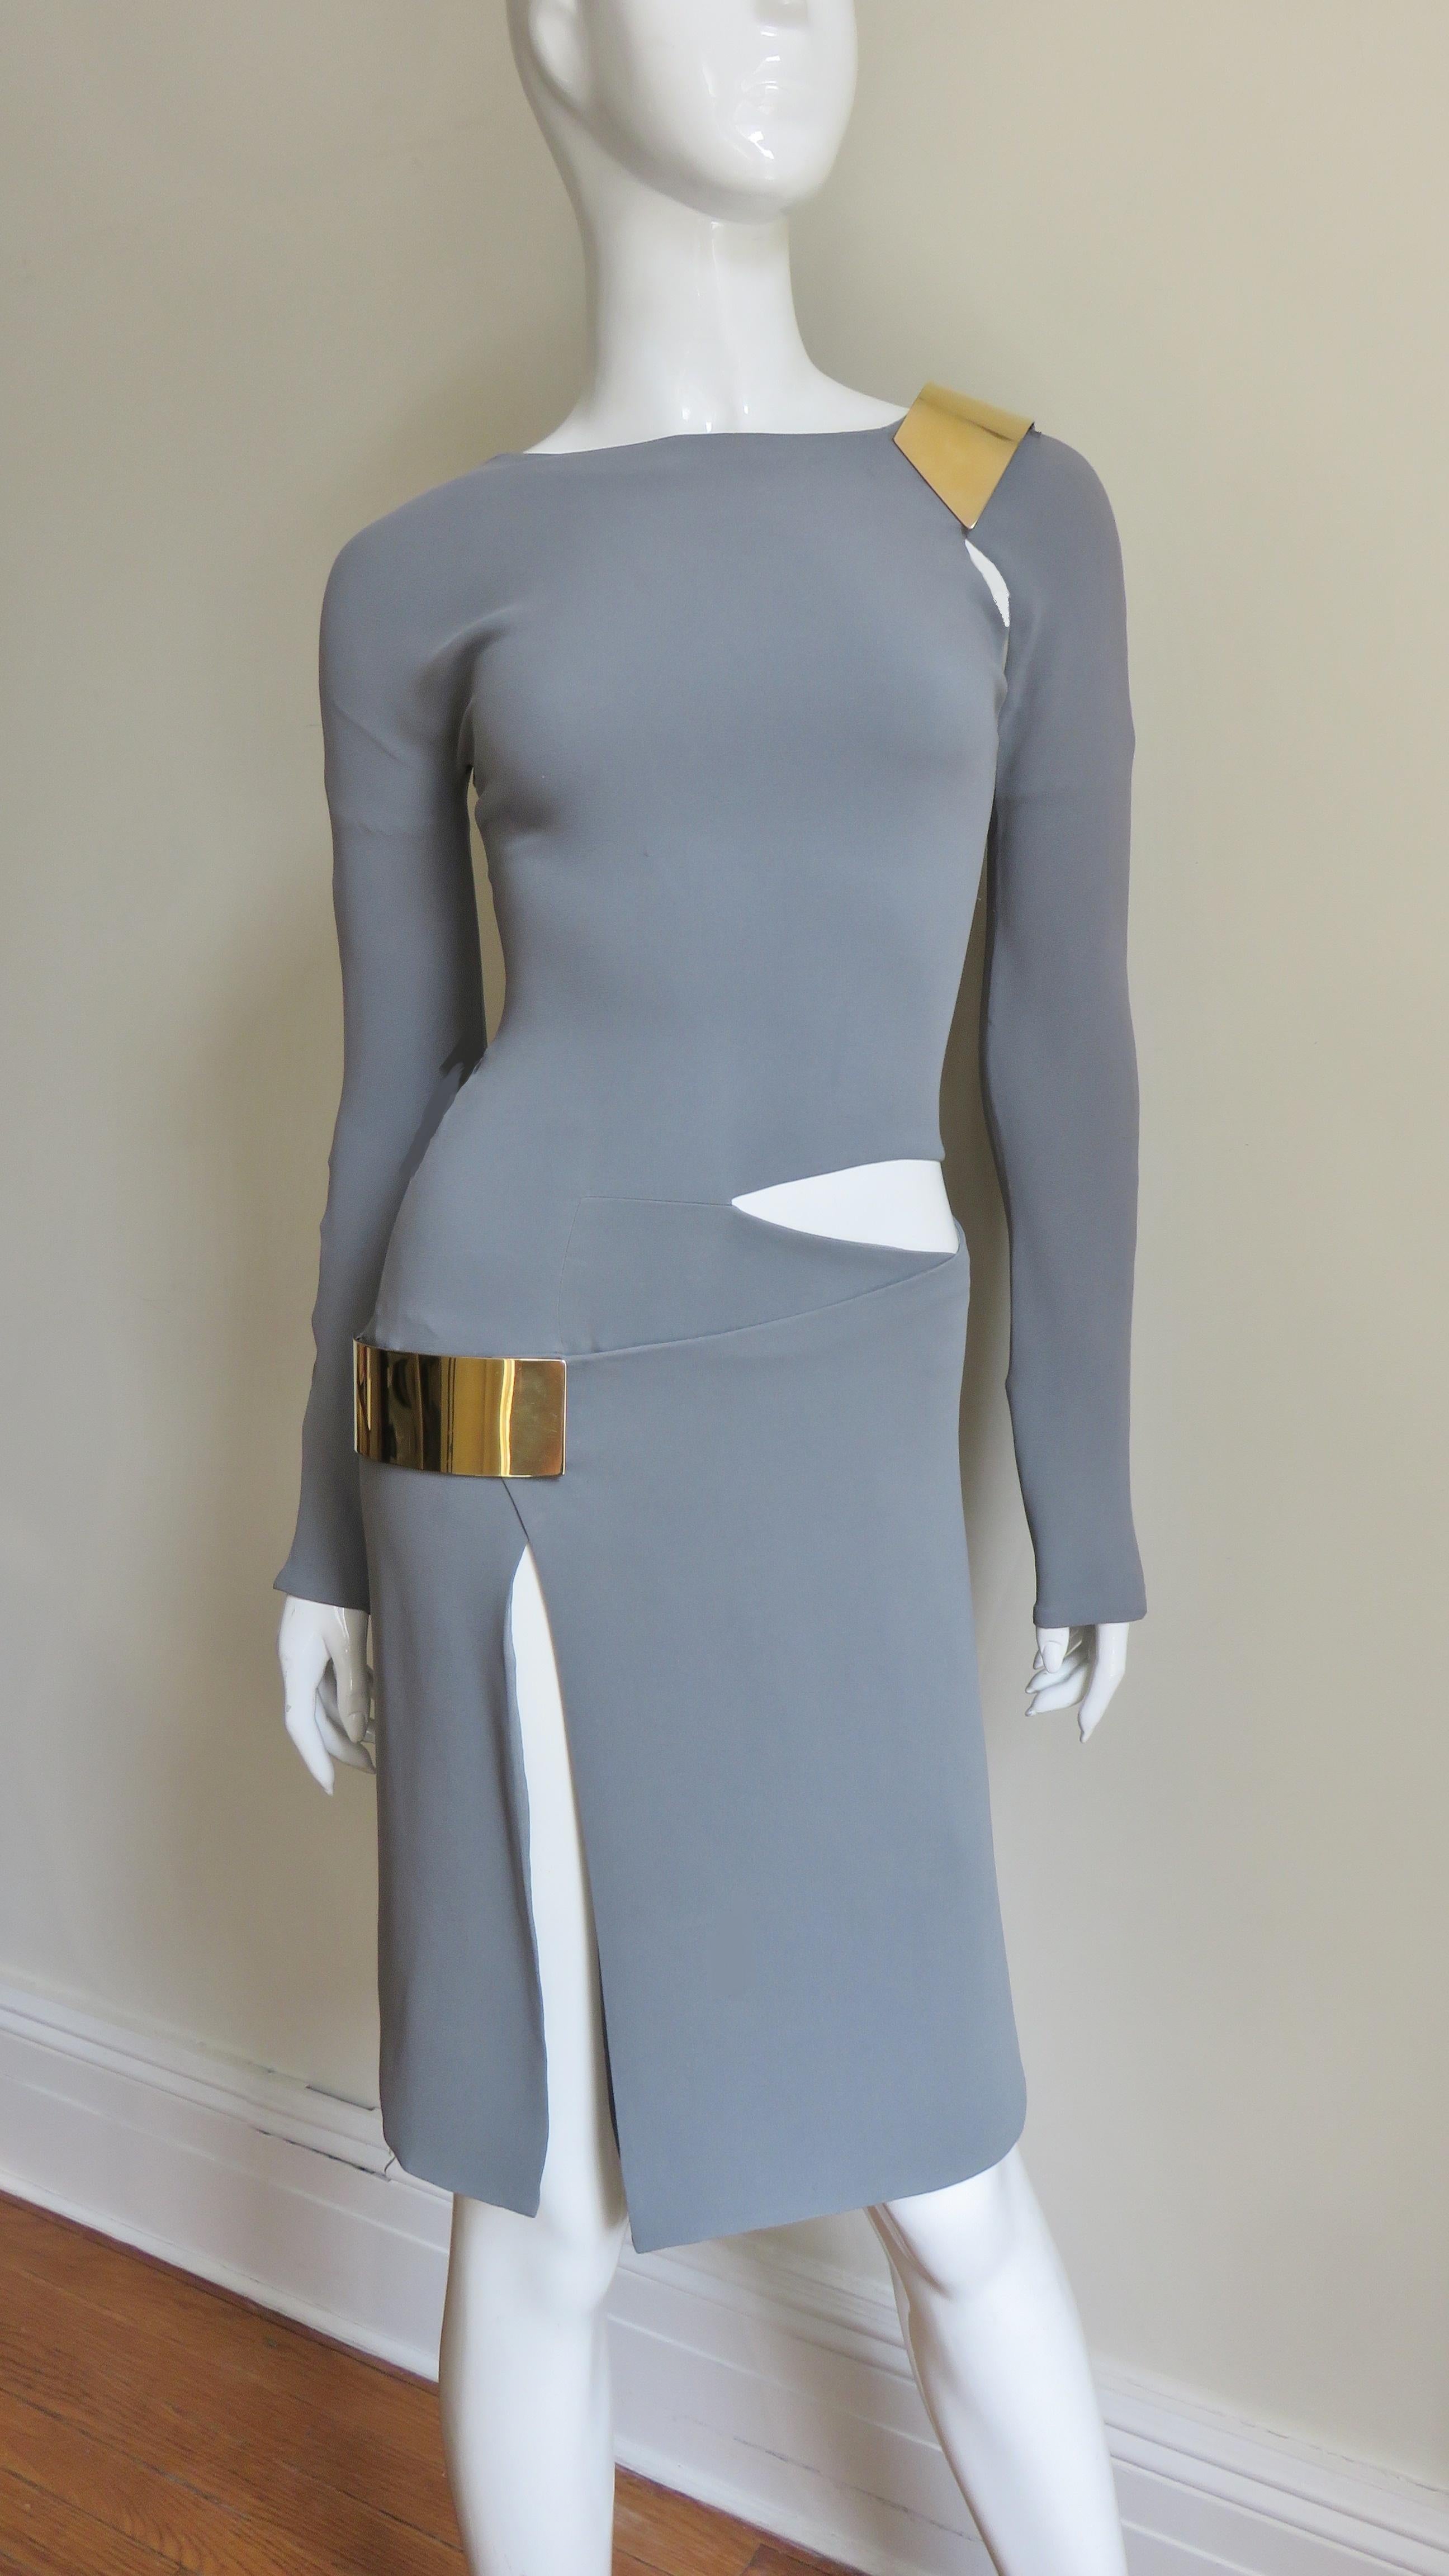 Une fabuleuse robe en jersey de soie grise signée Gucci.  Elle est ajustée, a une encolure simple, des manches longues et des découpes sur une épaule et sur le côté de la taille, ainsi qu'une fente sur le devant d'une jambe de la jupe droite. La